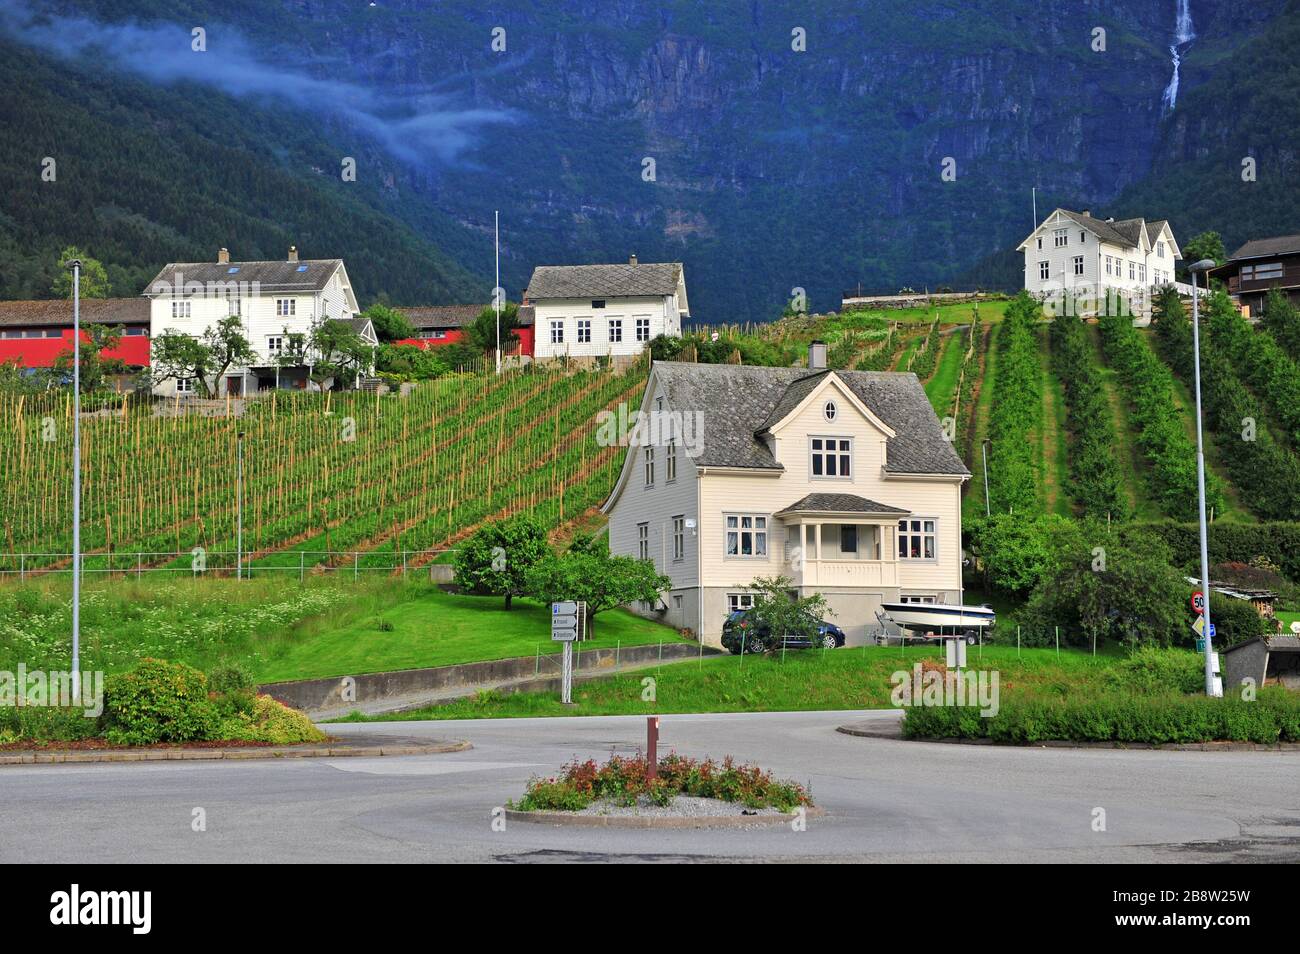 Weiße Häuser und grüne Terrassen in der norwegischen Landschaft, Nordeuropa Stockfoto